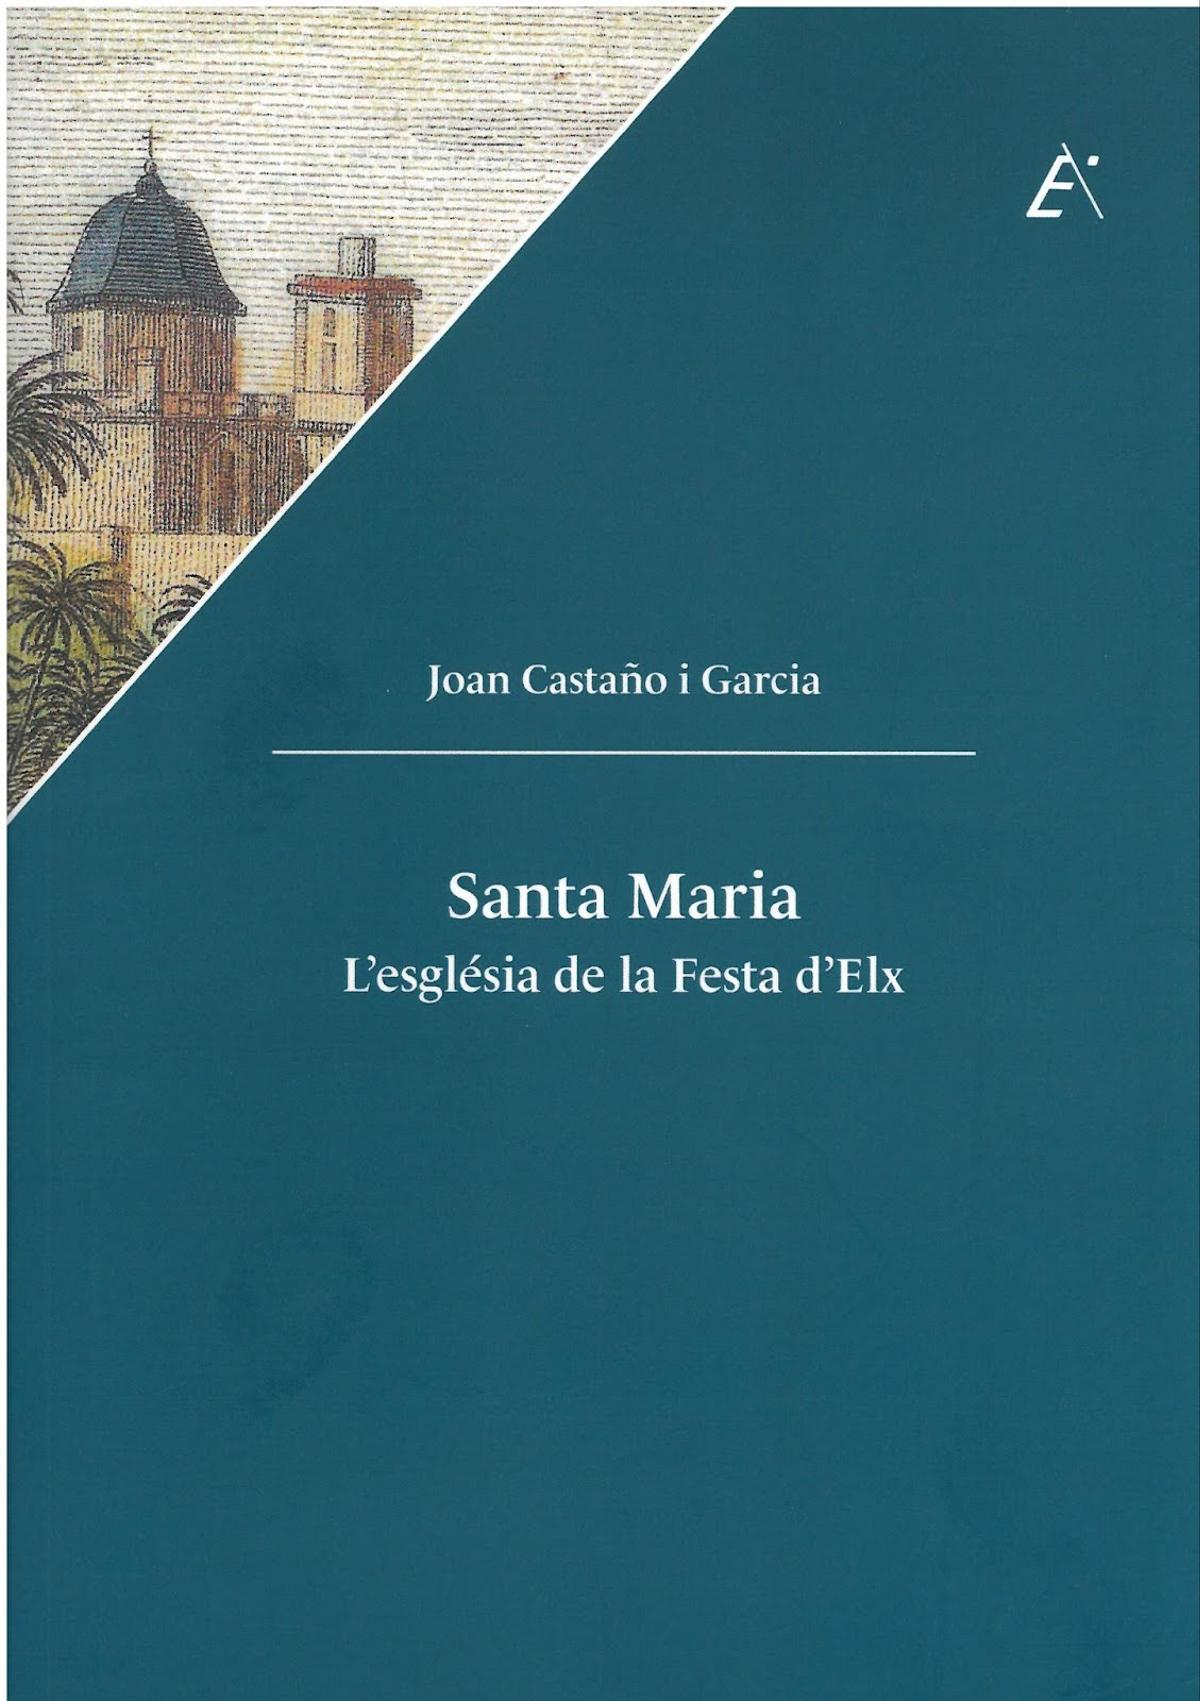 El libro «Santa Maria. L'església de la Festa d'Elx» es fruto de varias décadas de rigurosa investigación en archivos locales y nacionales